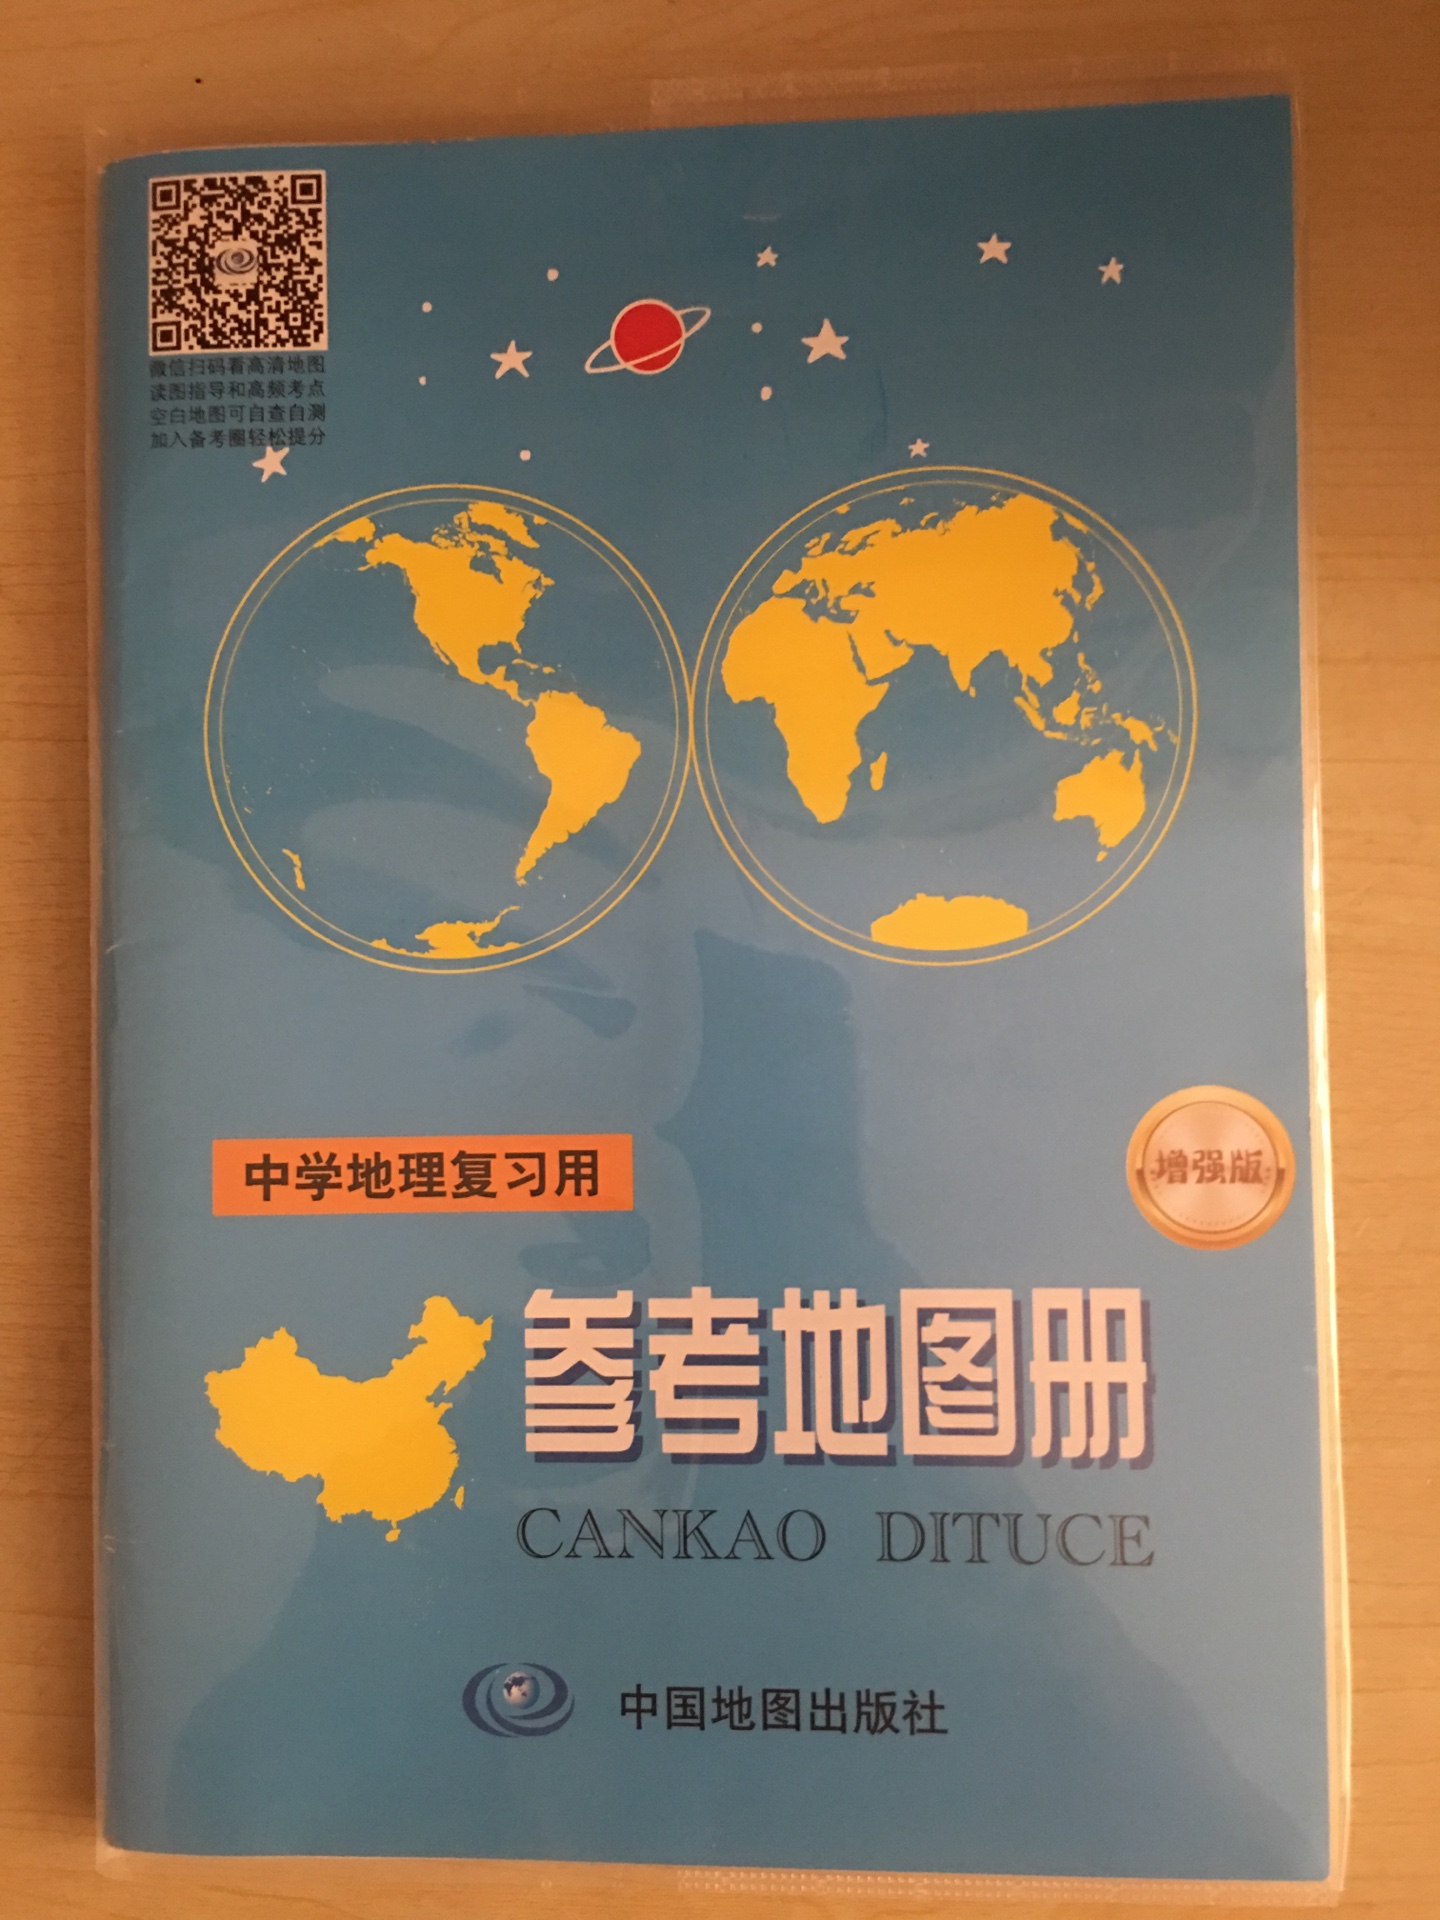 孩子老师要求带小的中国地图，上次在买的都是大图，只能再买一份了，挑了很久，终于找到了，非常不错，内容很多，知识点也很详尽，一致好评……